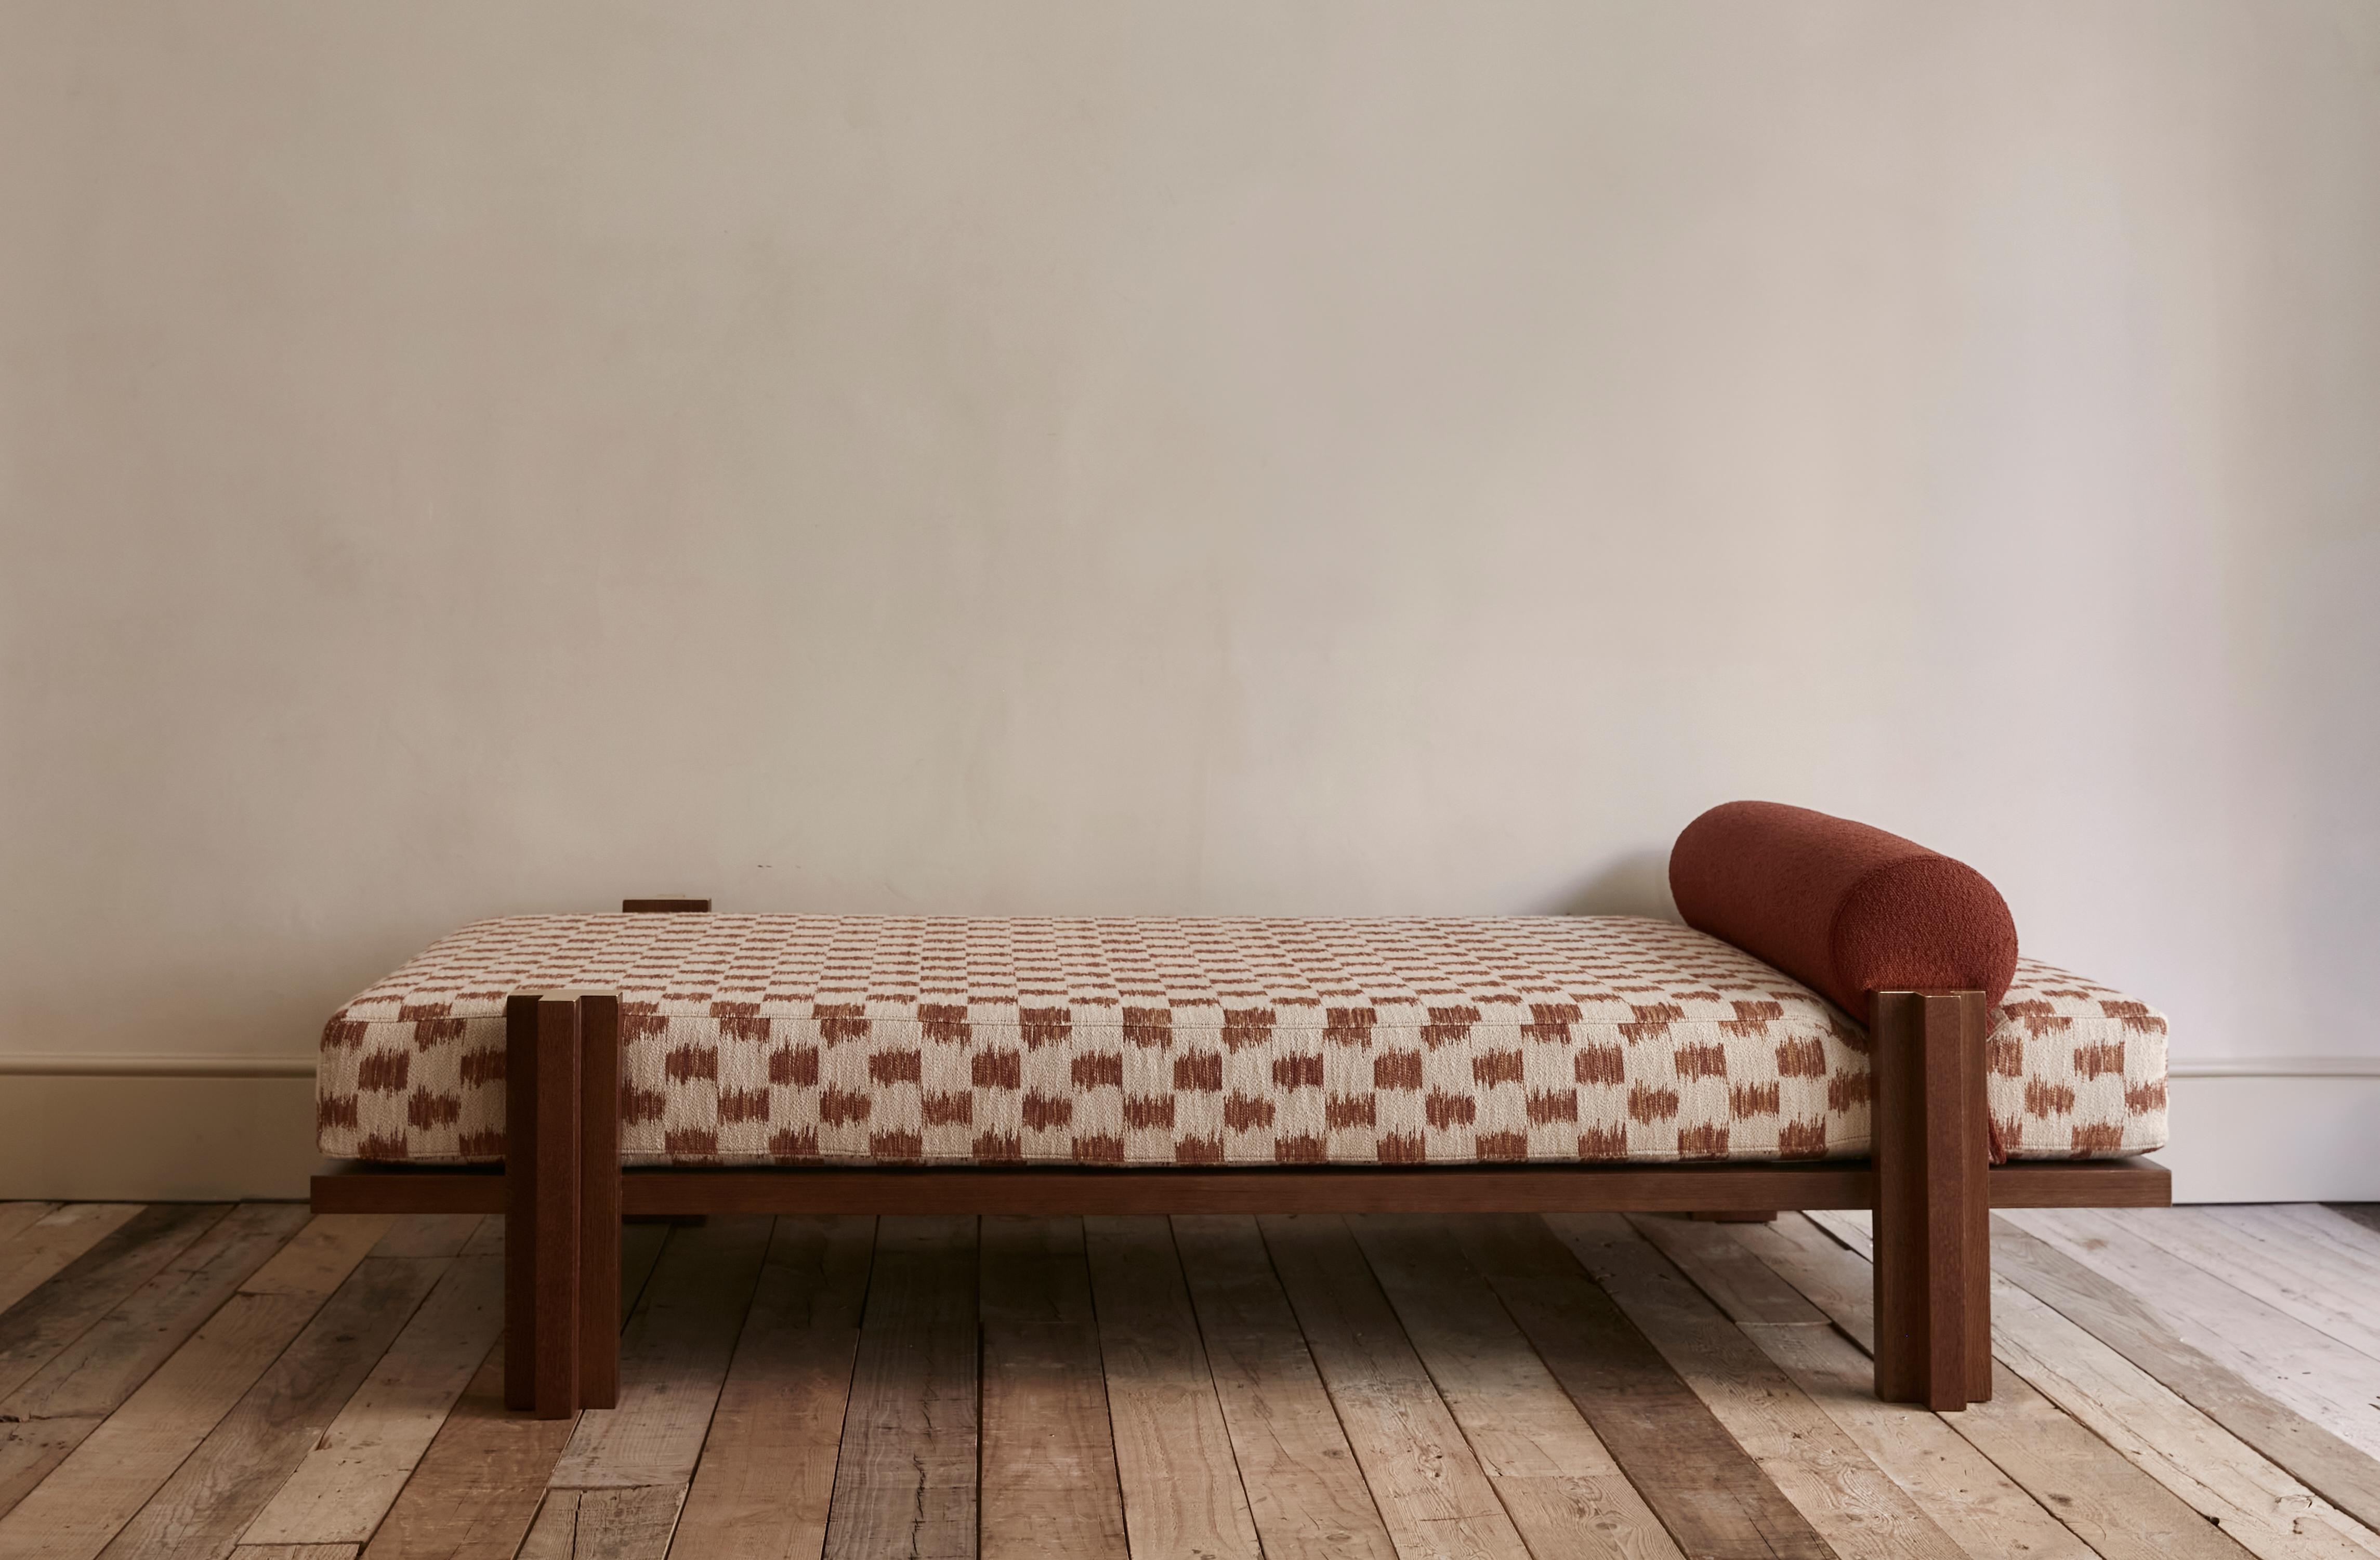 Pièce unique créée par le studio d'architecture espagnol Sierra de la Higuera. Il s'agit d'un élément de repos, de type chaise longue, dont la structure est en placage de noyer. Détails en laiton qui complètent la structure de la pièce. Les tissus